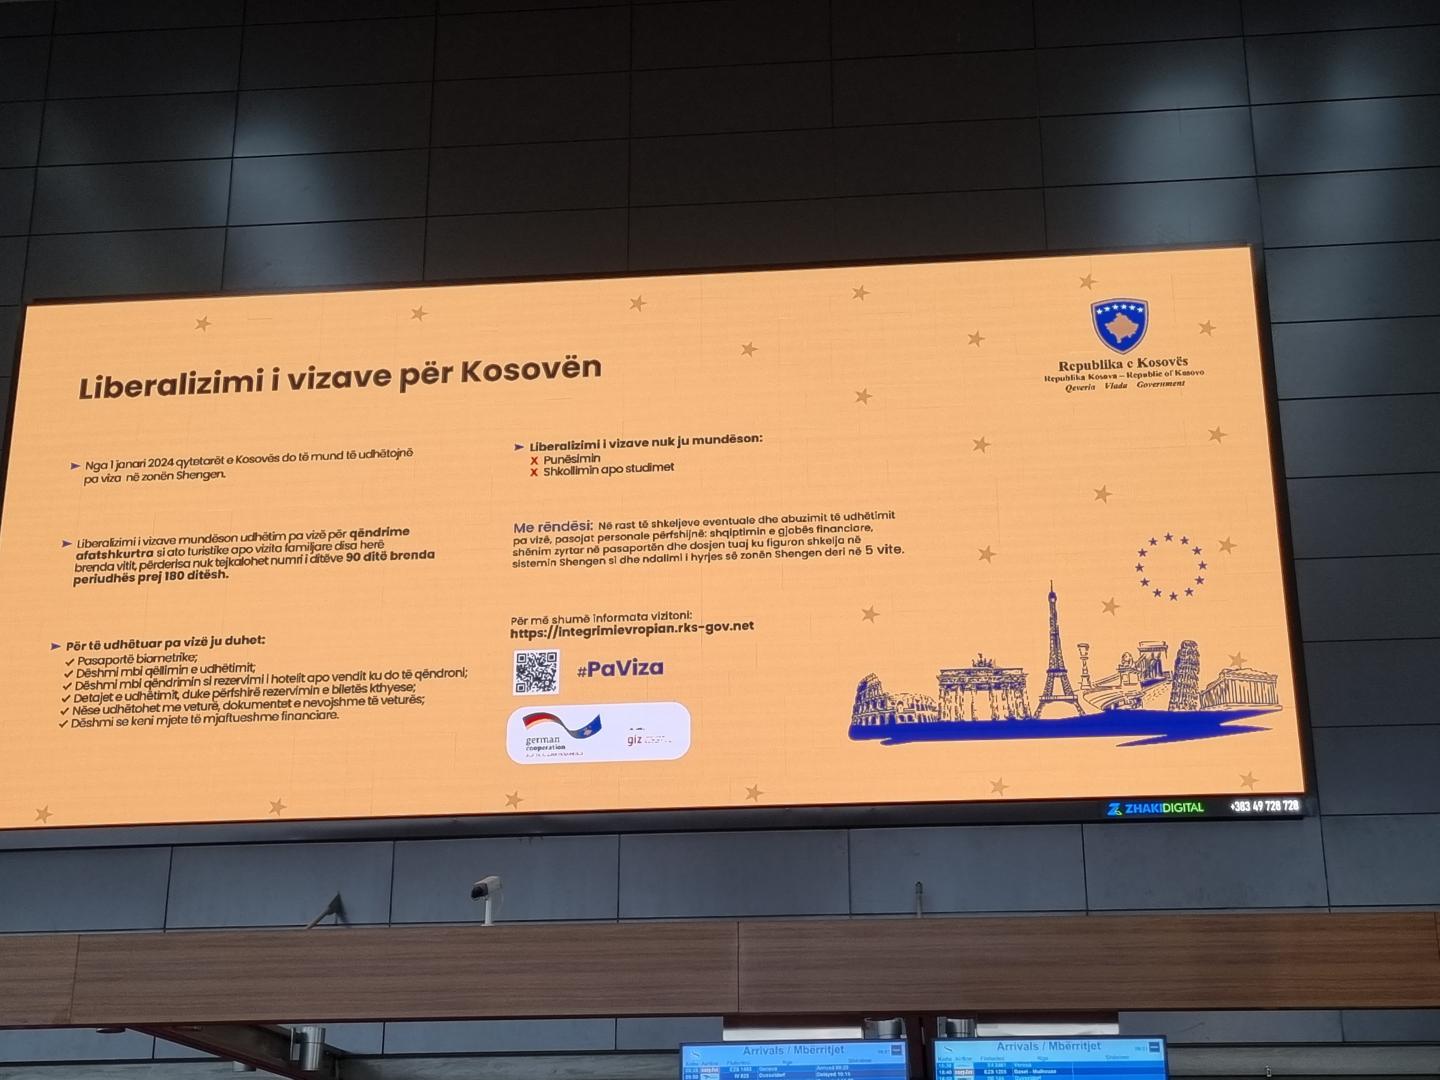 Hinweisscreen am Flughafen Pristina zur bevorstehenden Visaliberalisierung